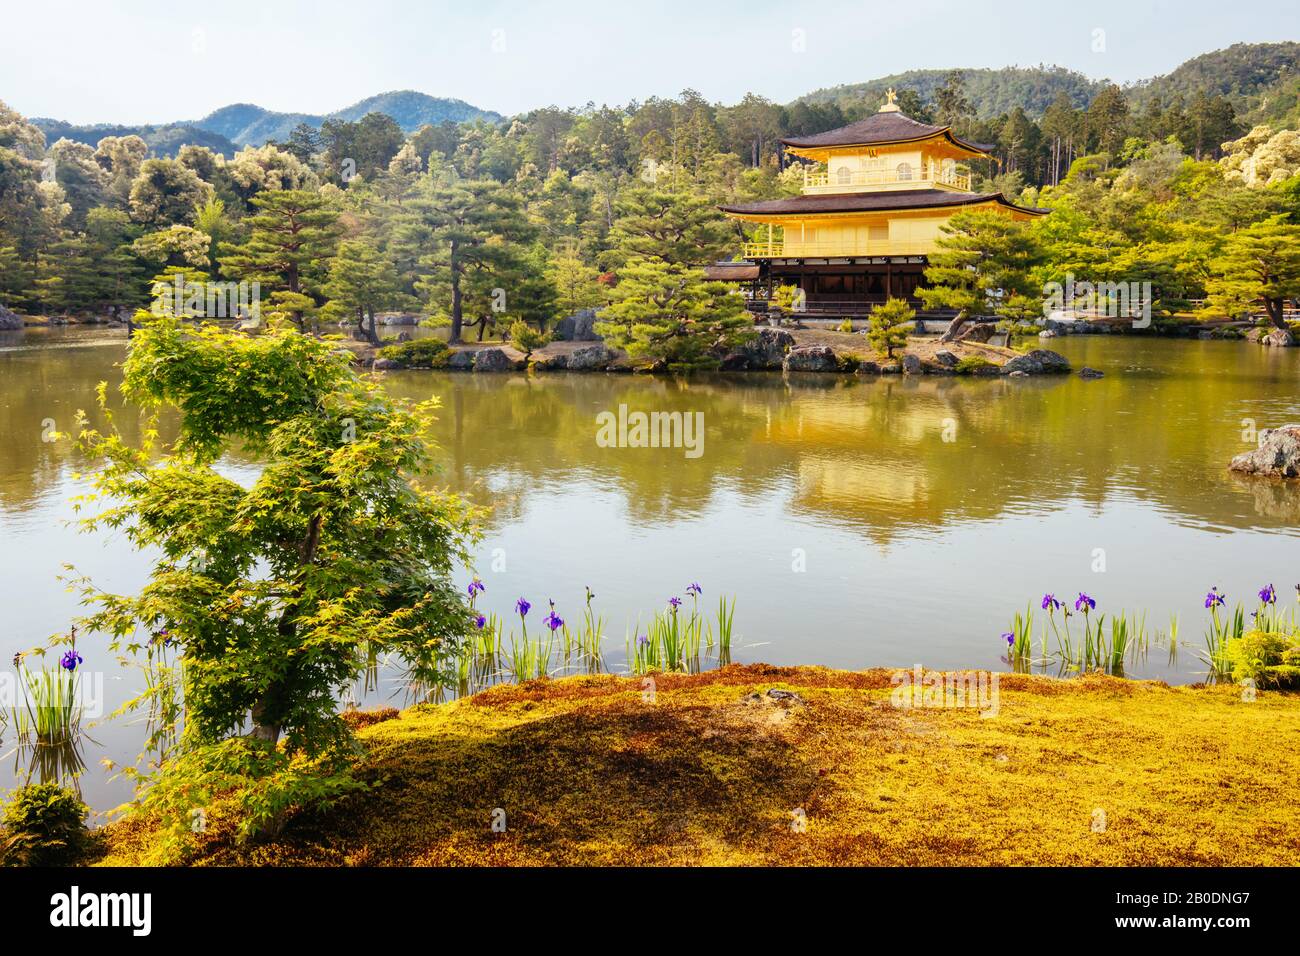 Kinkakuji Temple or The Golden Pavilion in Kyoto, Japan Stock Photo